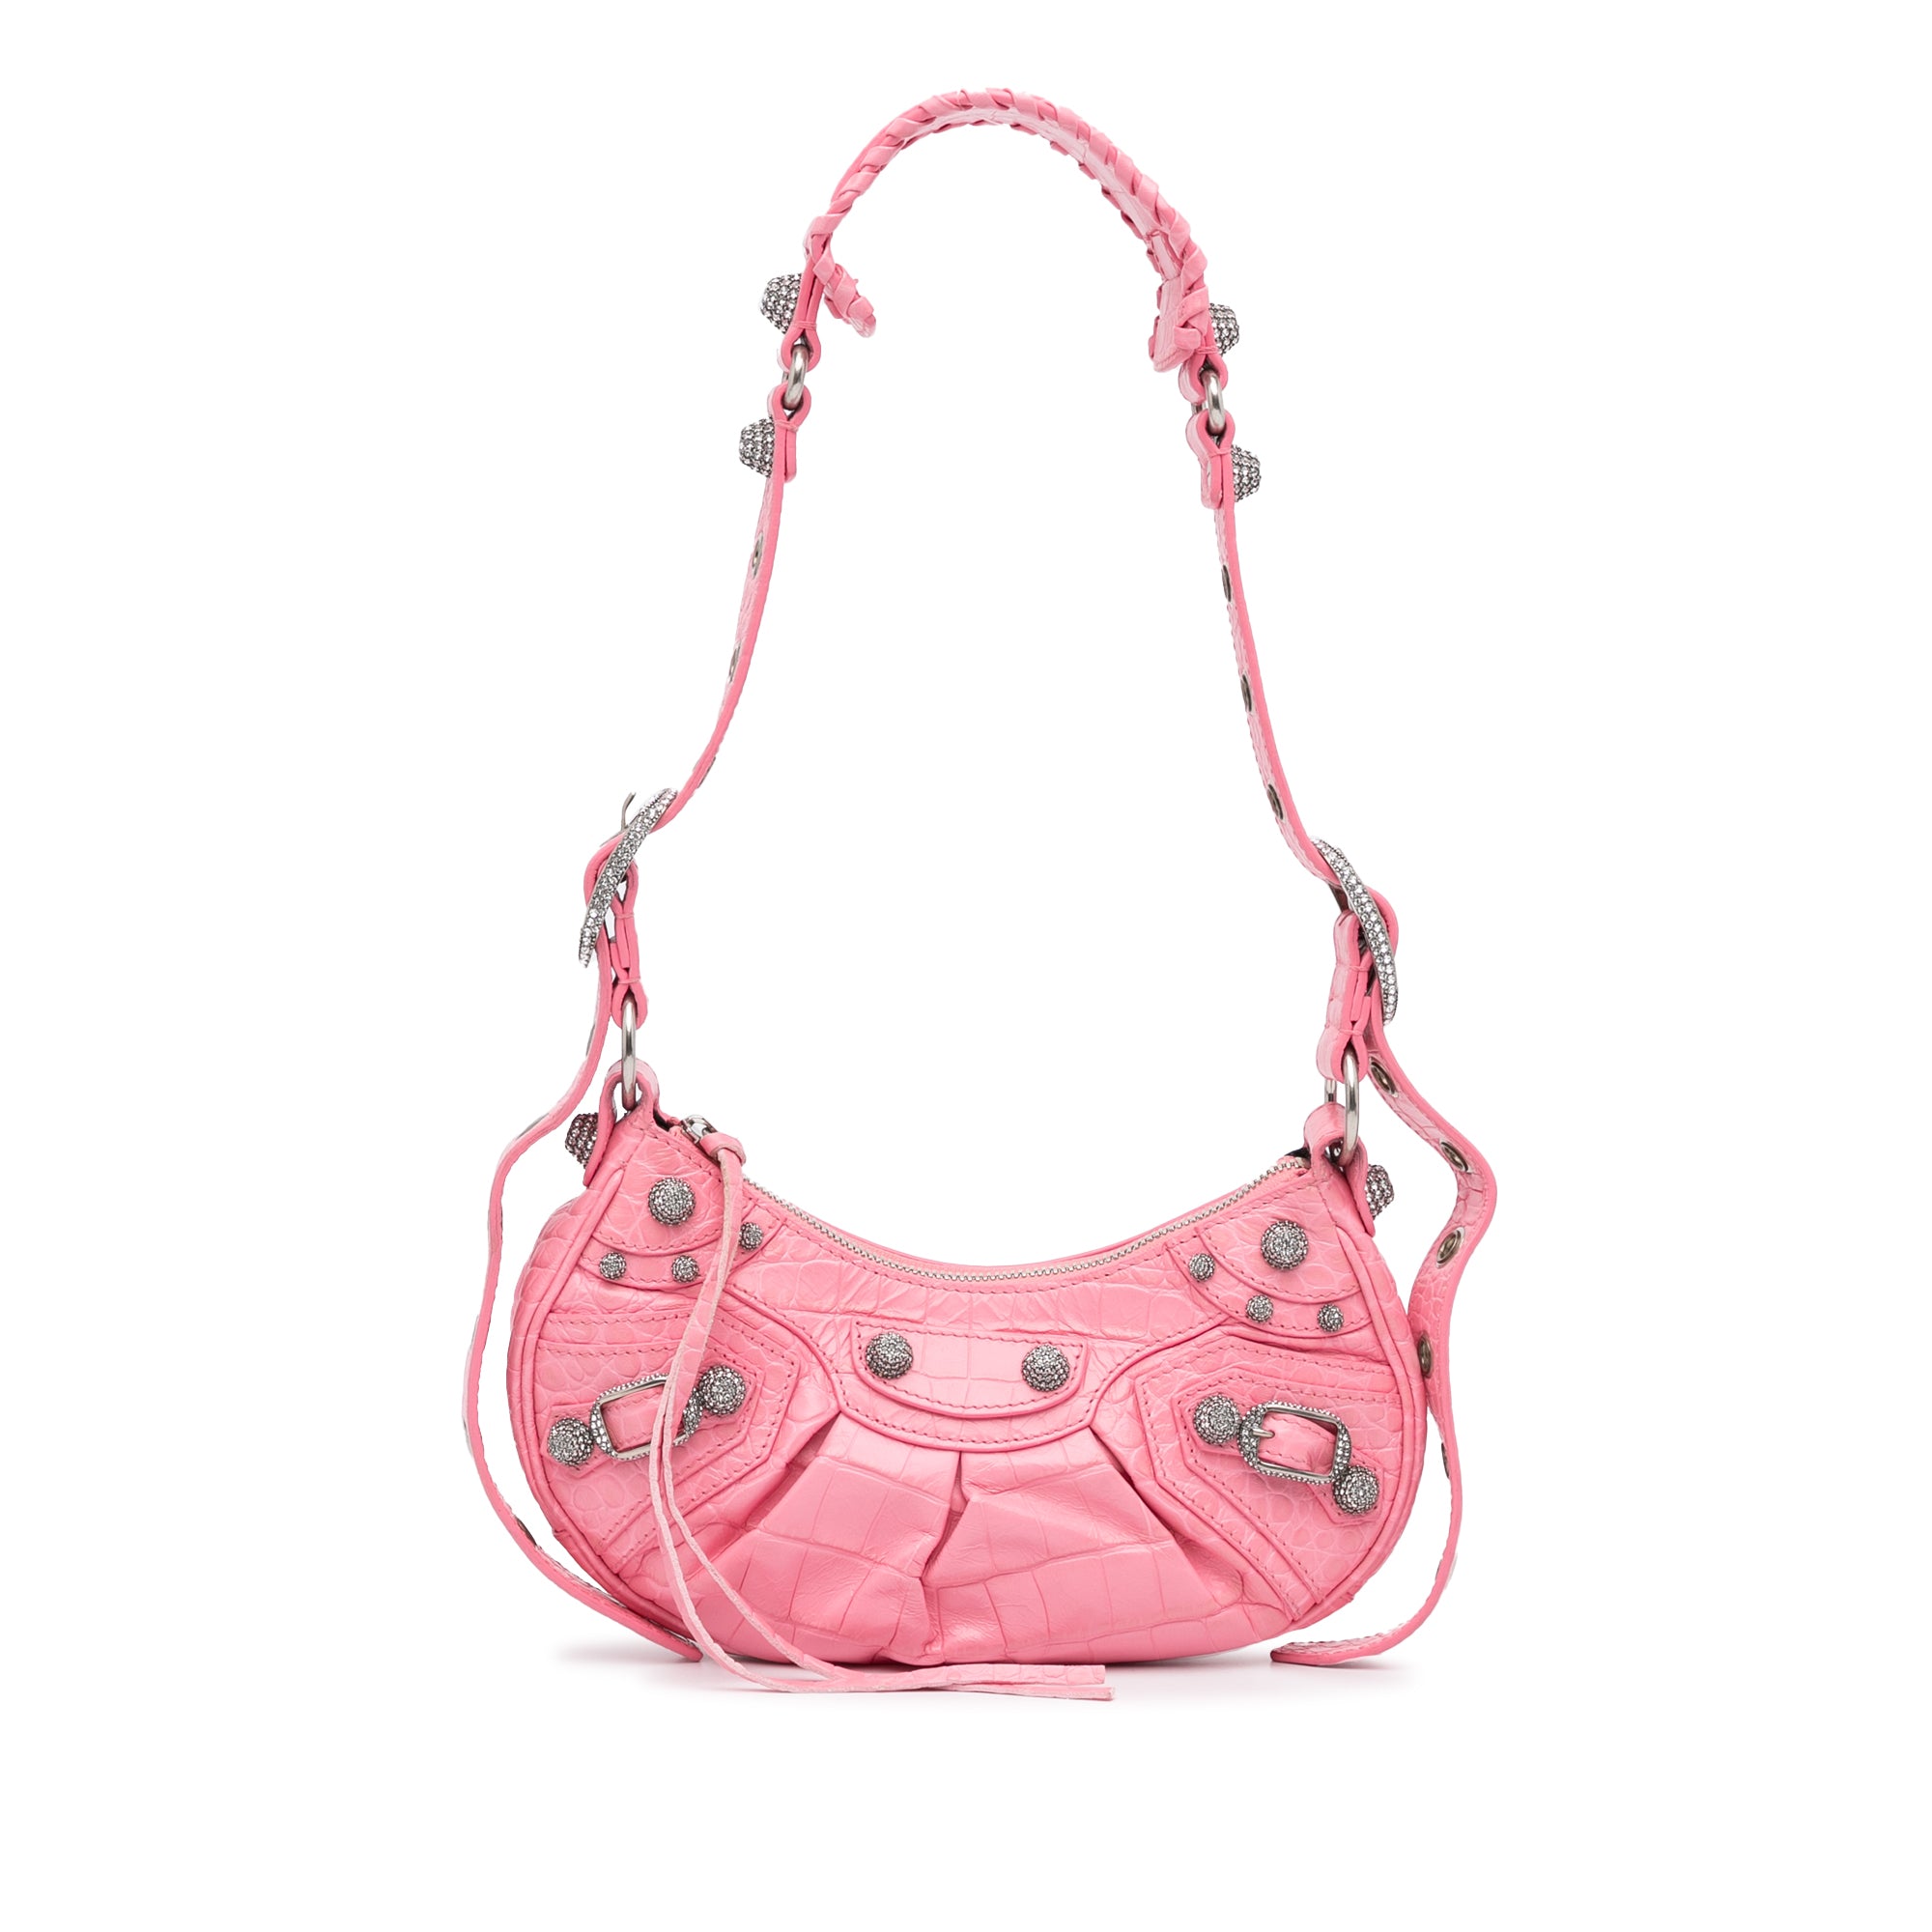 Prada Pre-owned Crystal-embellished Handbag - Pink